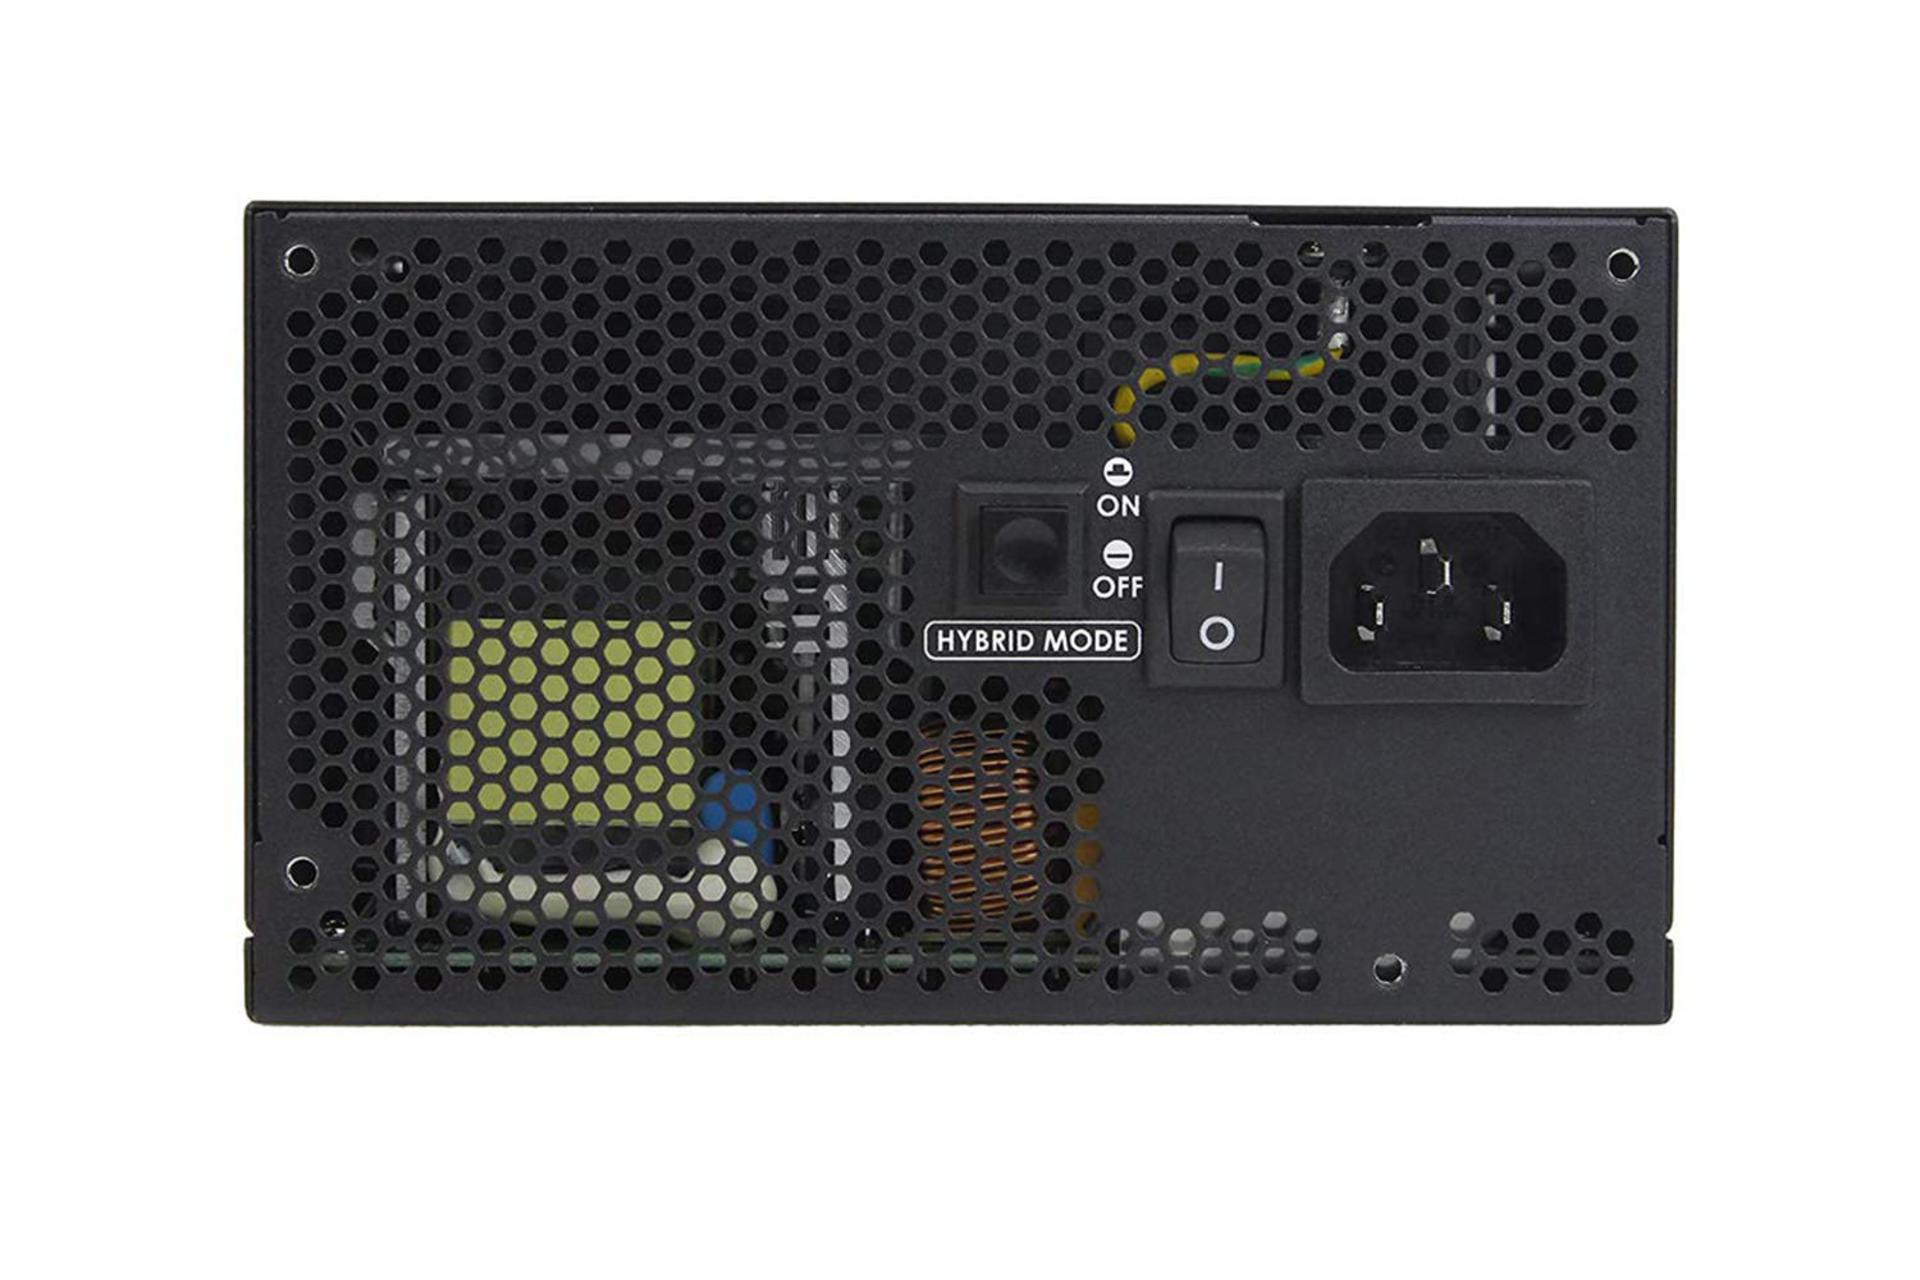 پاور کامپیوتر انتک HCG850 با توان 850 وات کلید پاور